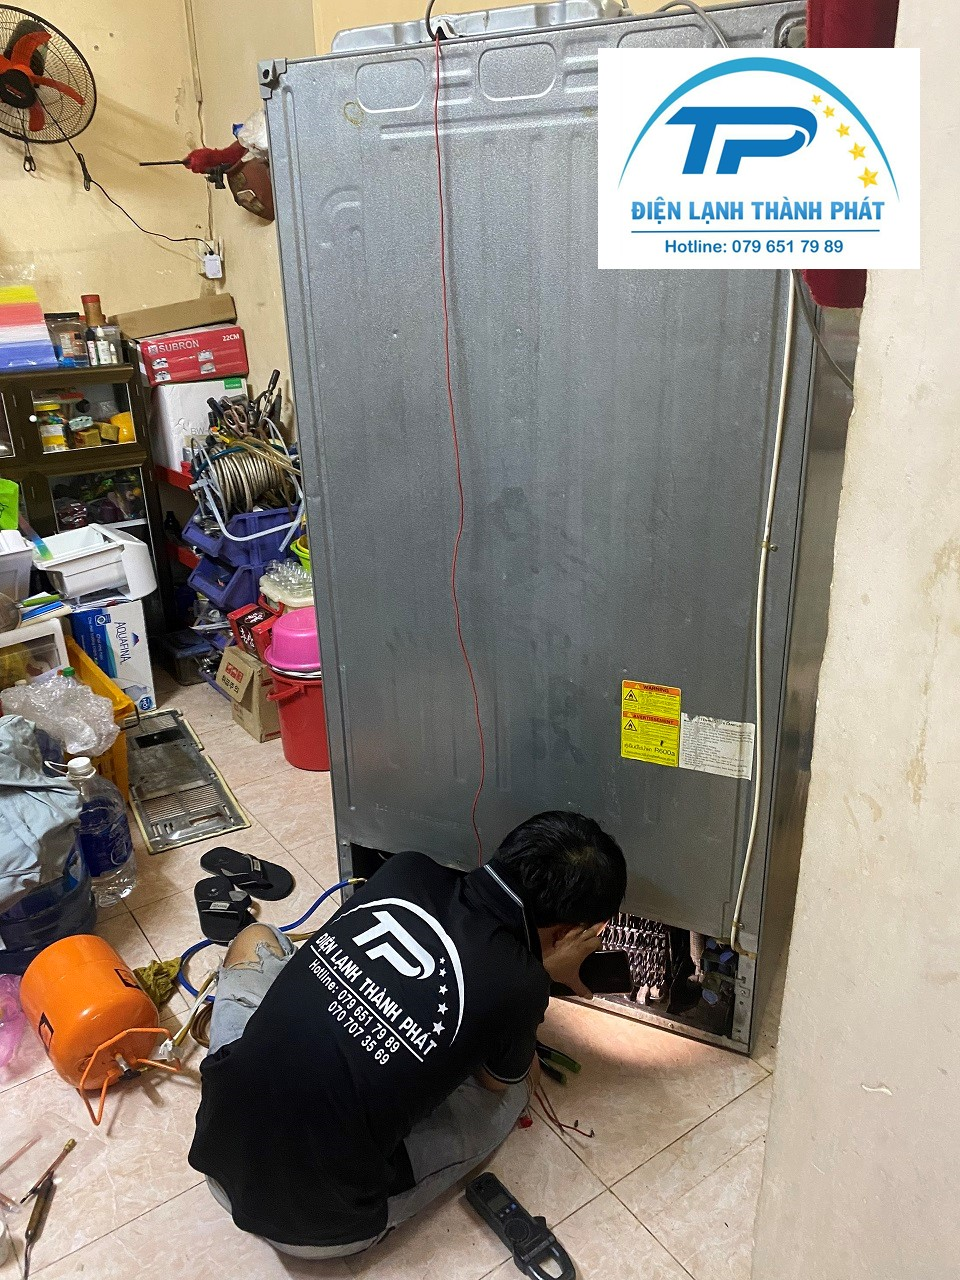 Quy trình sửa tủ lạnh tại Đà Nẵng của Thành Phát